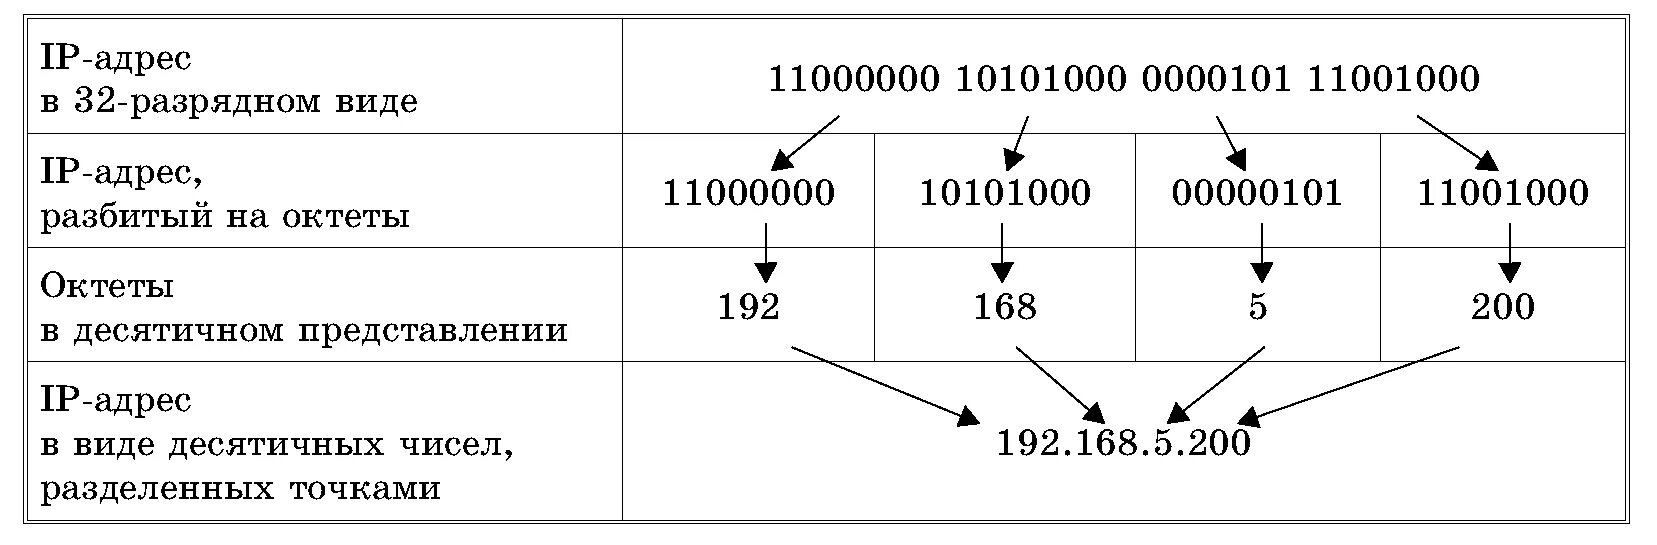 Ip адрес это простыми словами. Структура IP адреса. Как записывается IP-адрес компьютера?. Из чего состоит IP адресации. Из чего состоит IP адрес компьютера.